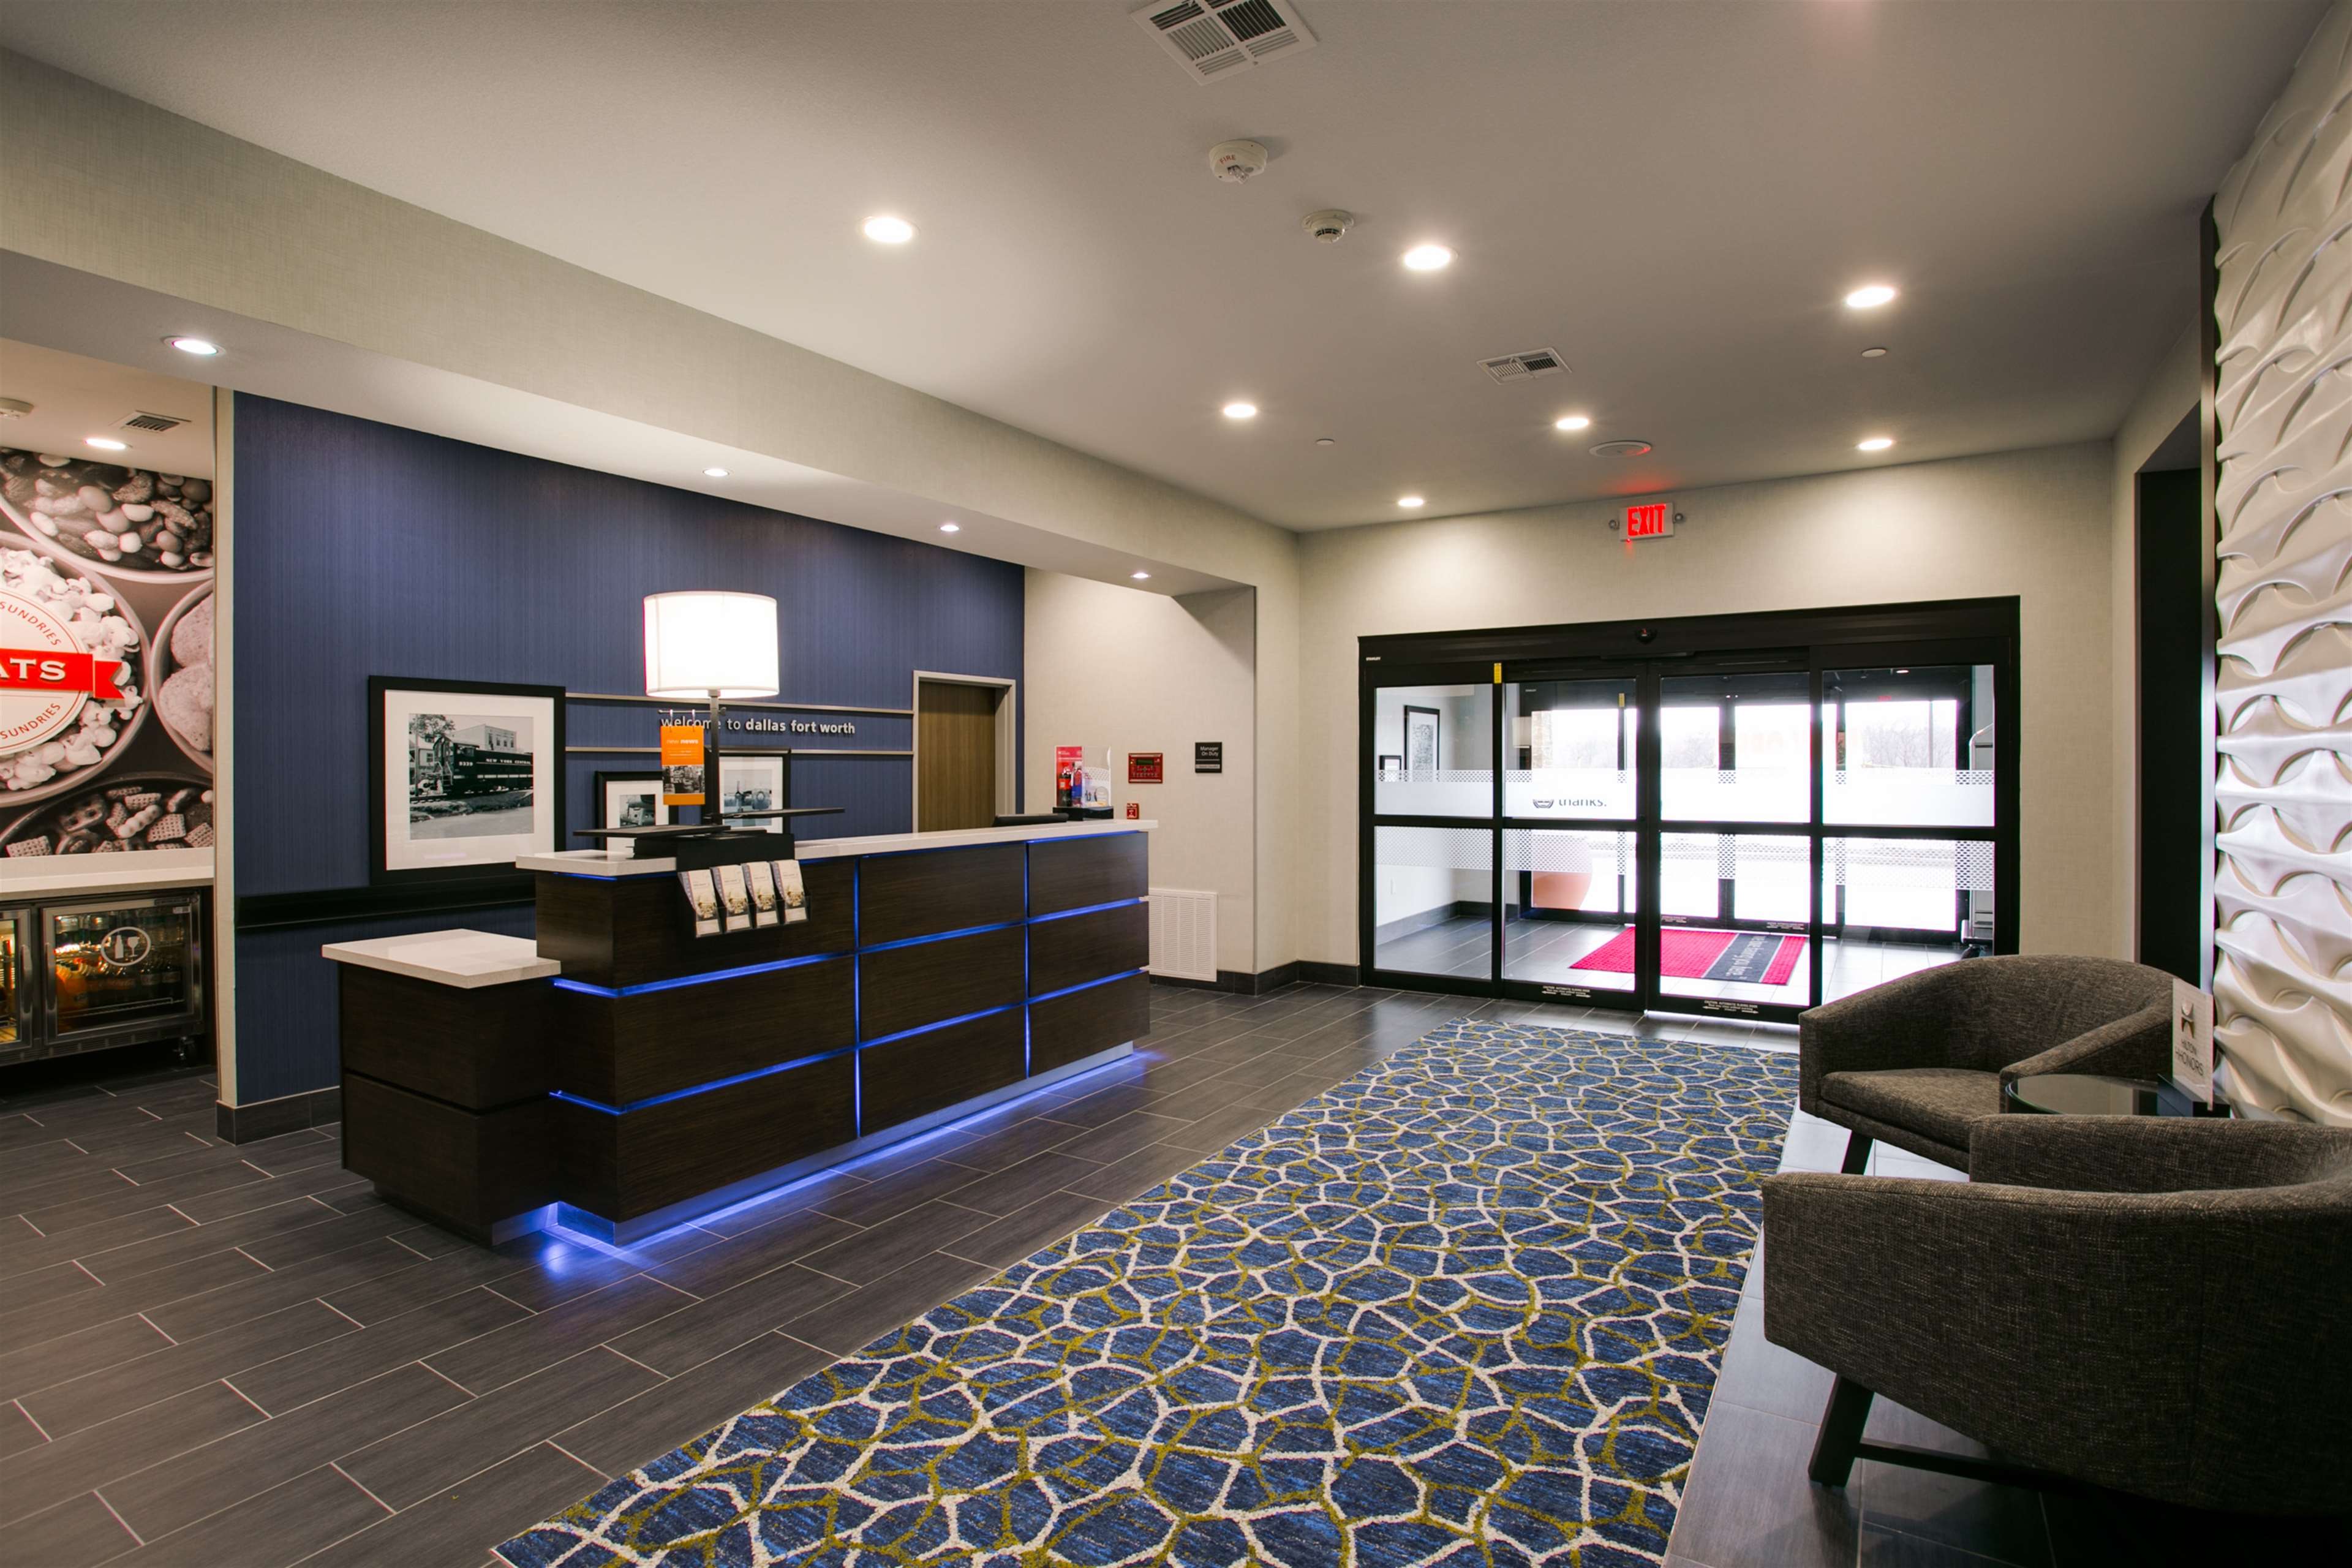 Hampton Inn Suites Dallas/Ft Worth Airport South 4201 Reggis Court